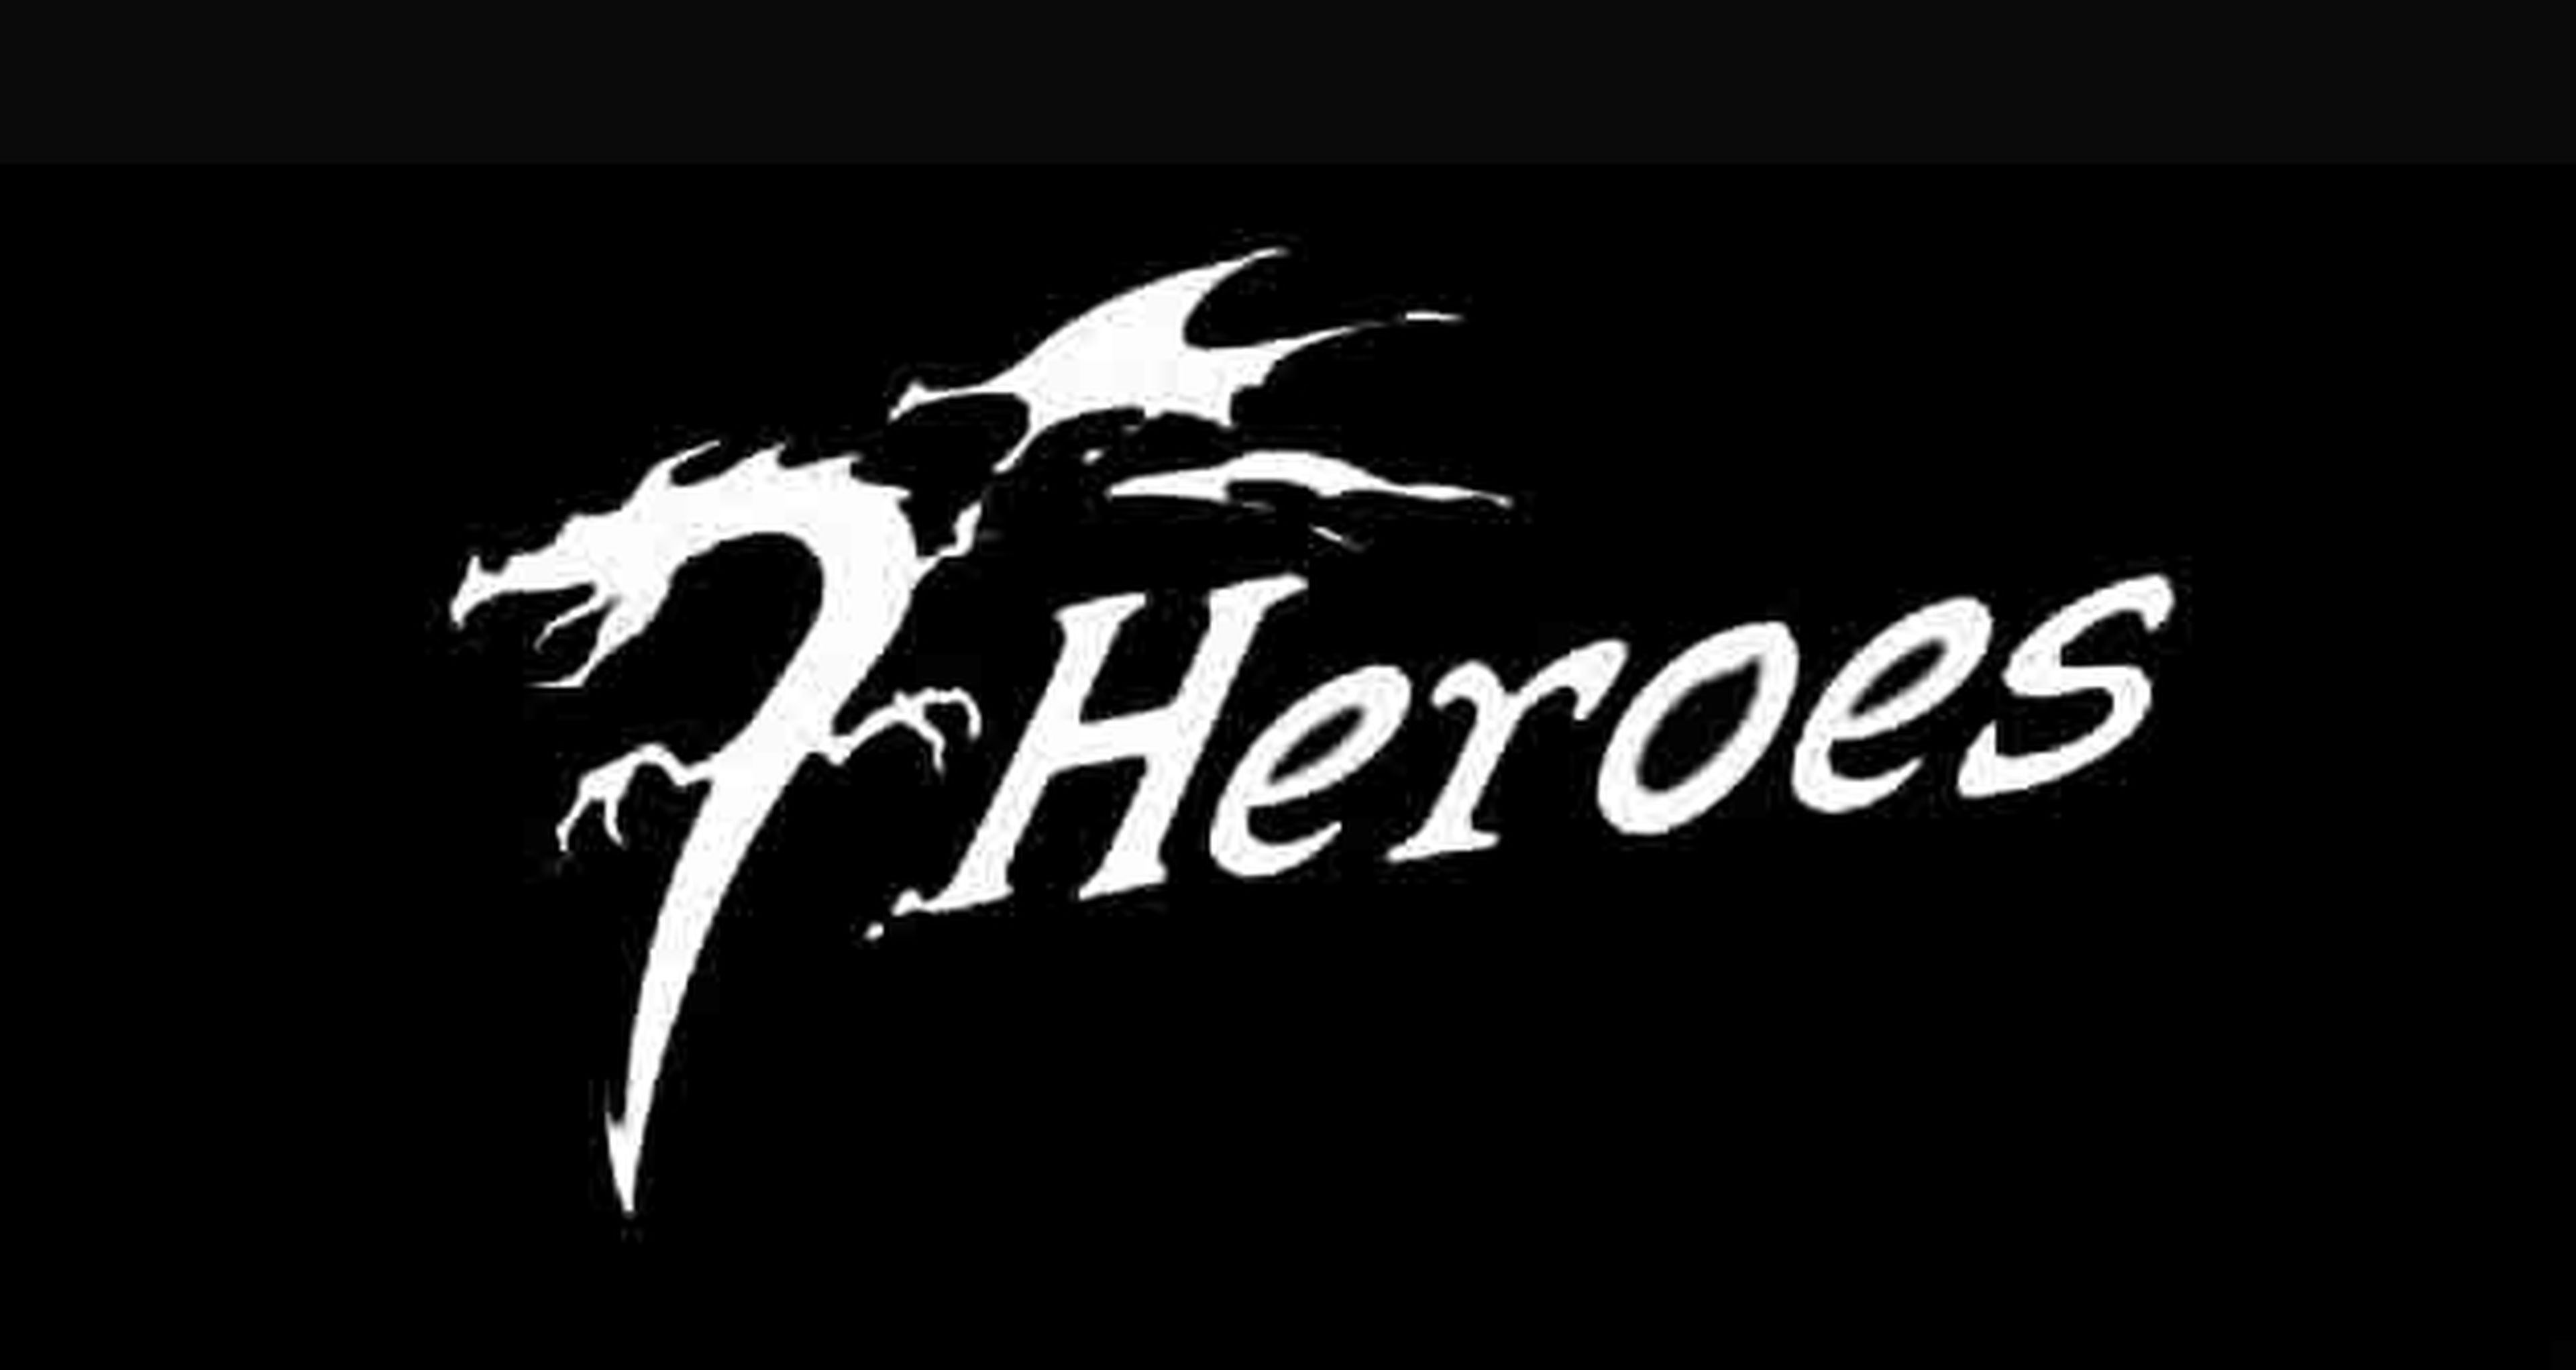 7 Heroes: Nueva tienda de cómic de Murcia